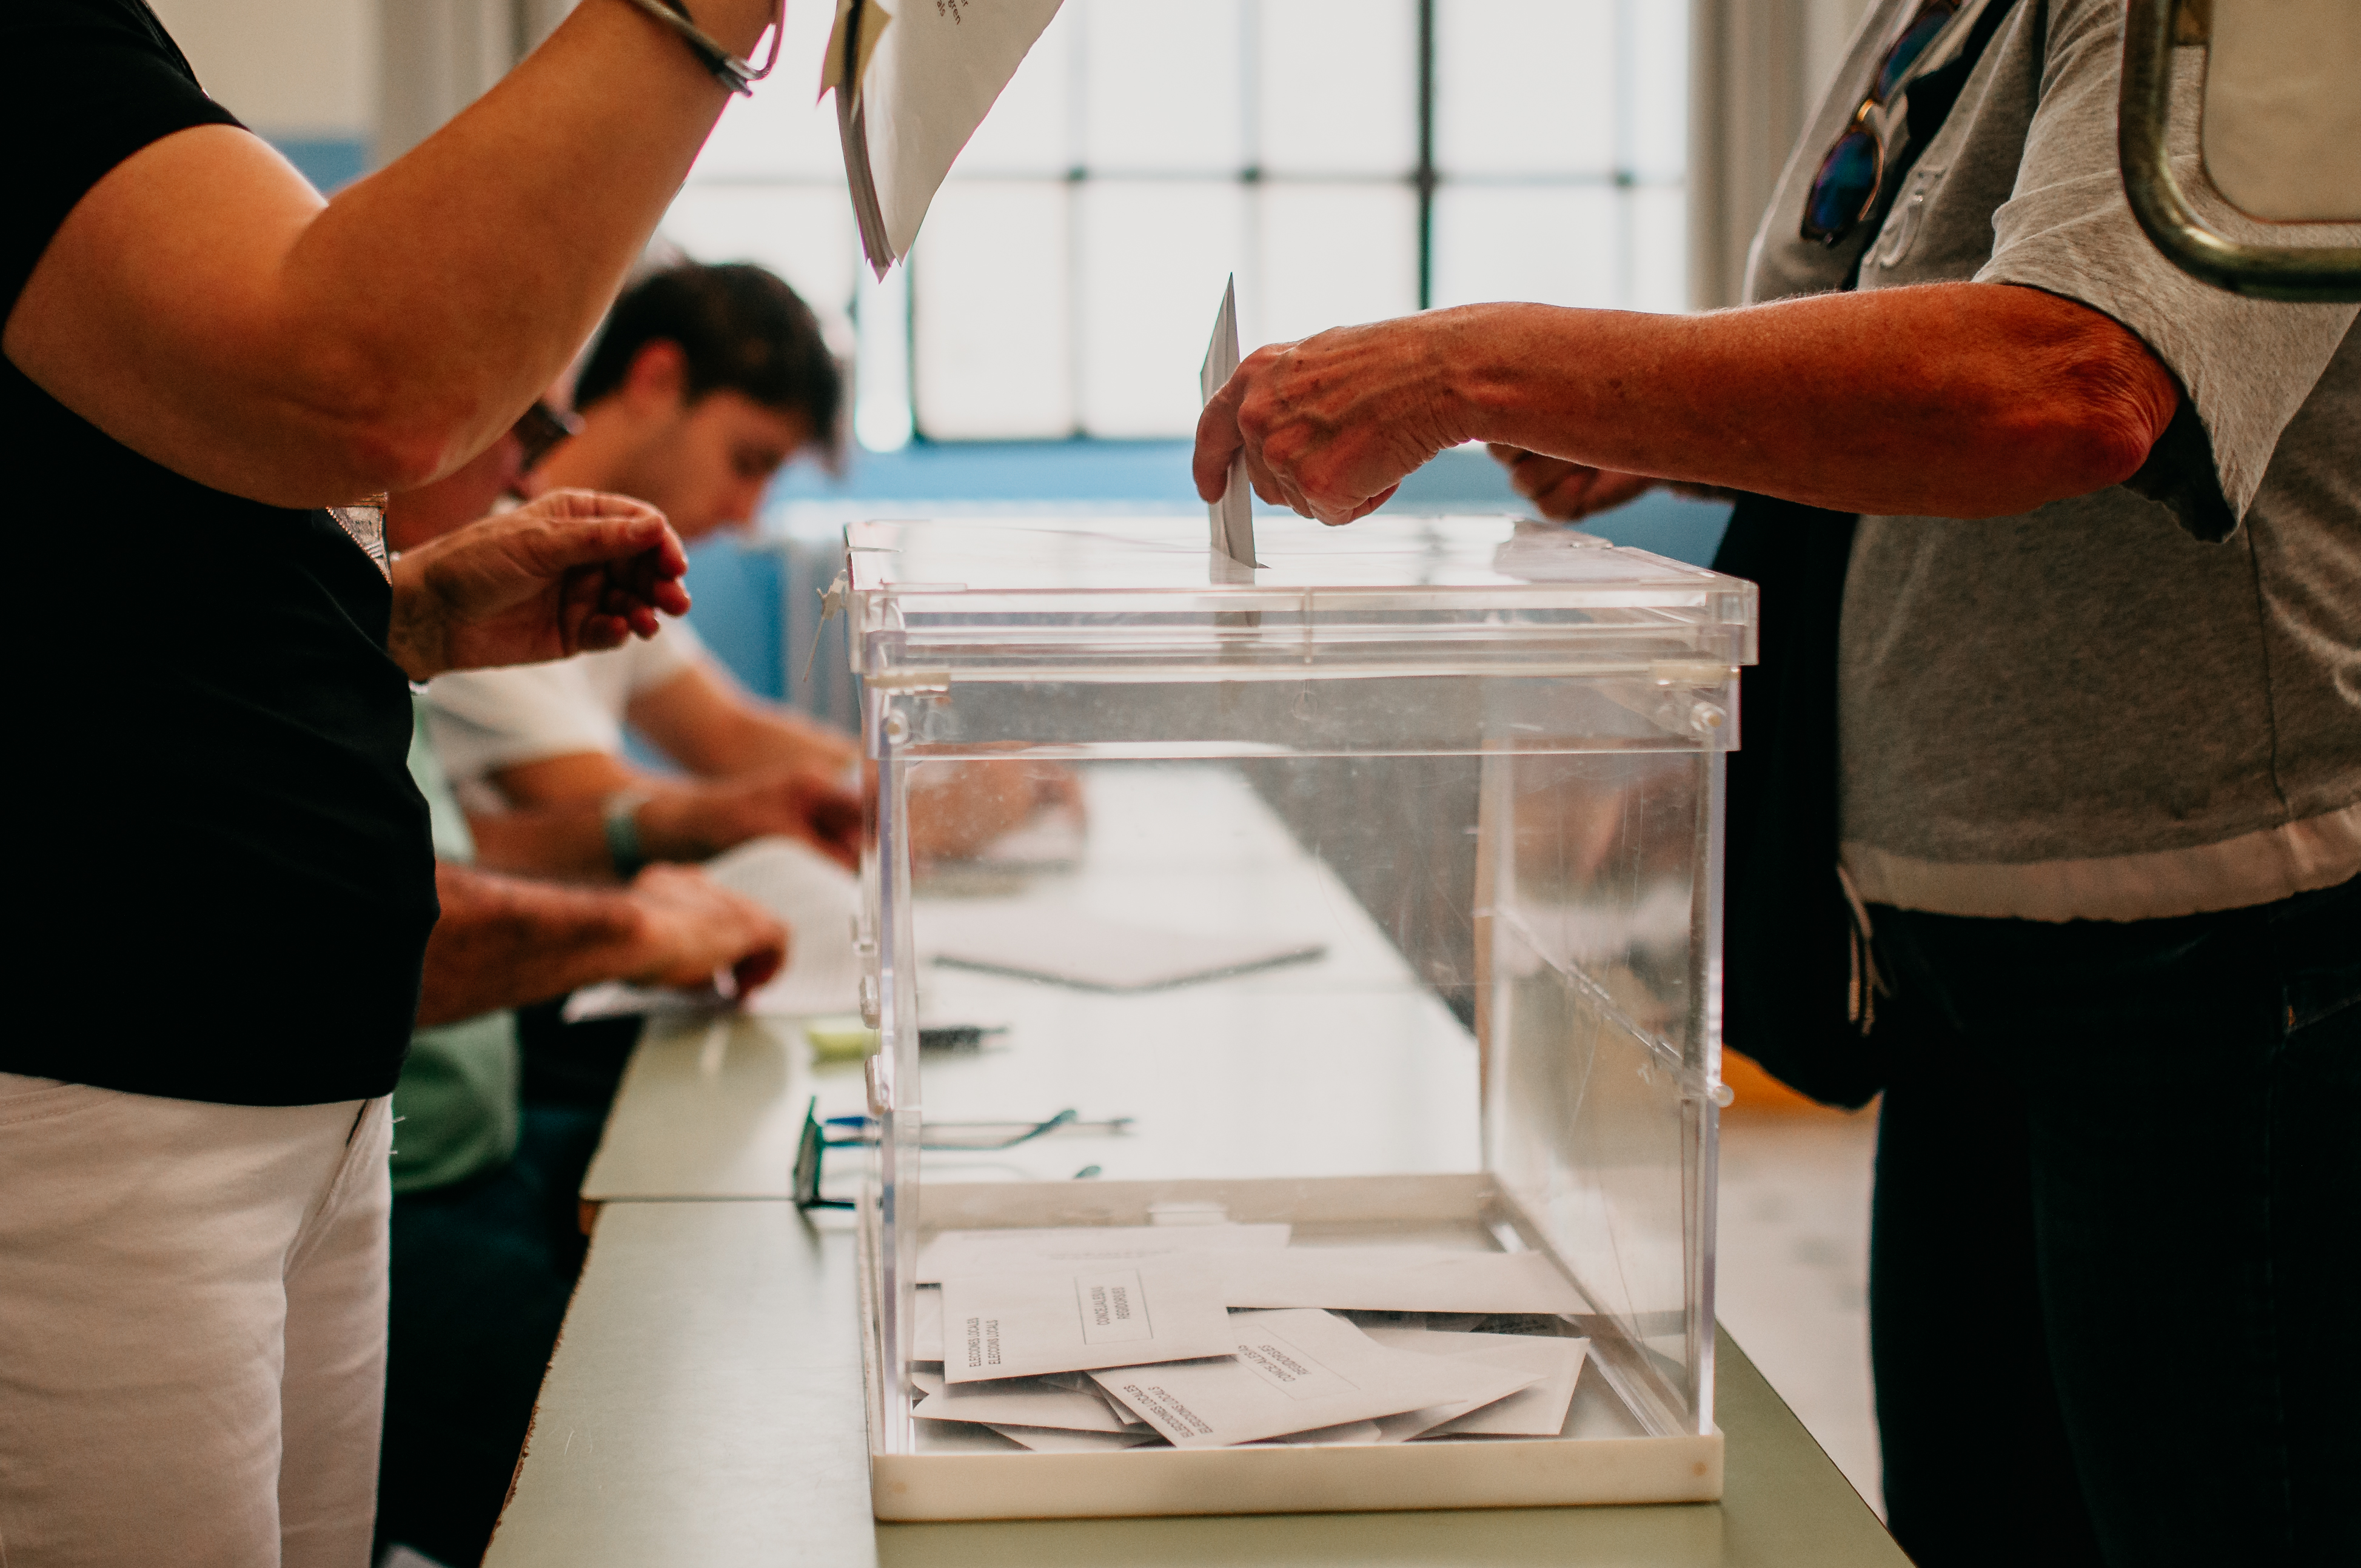 Sorteig dels integrants de les meses electorals per a les eleccions del 12 de maig al Parlament de Catalunya